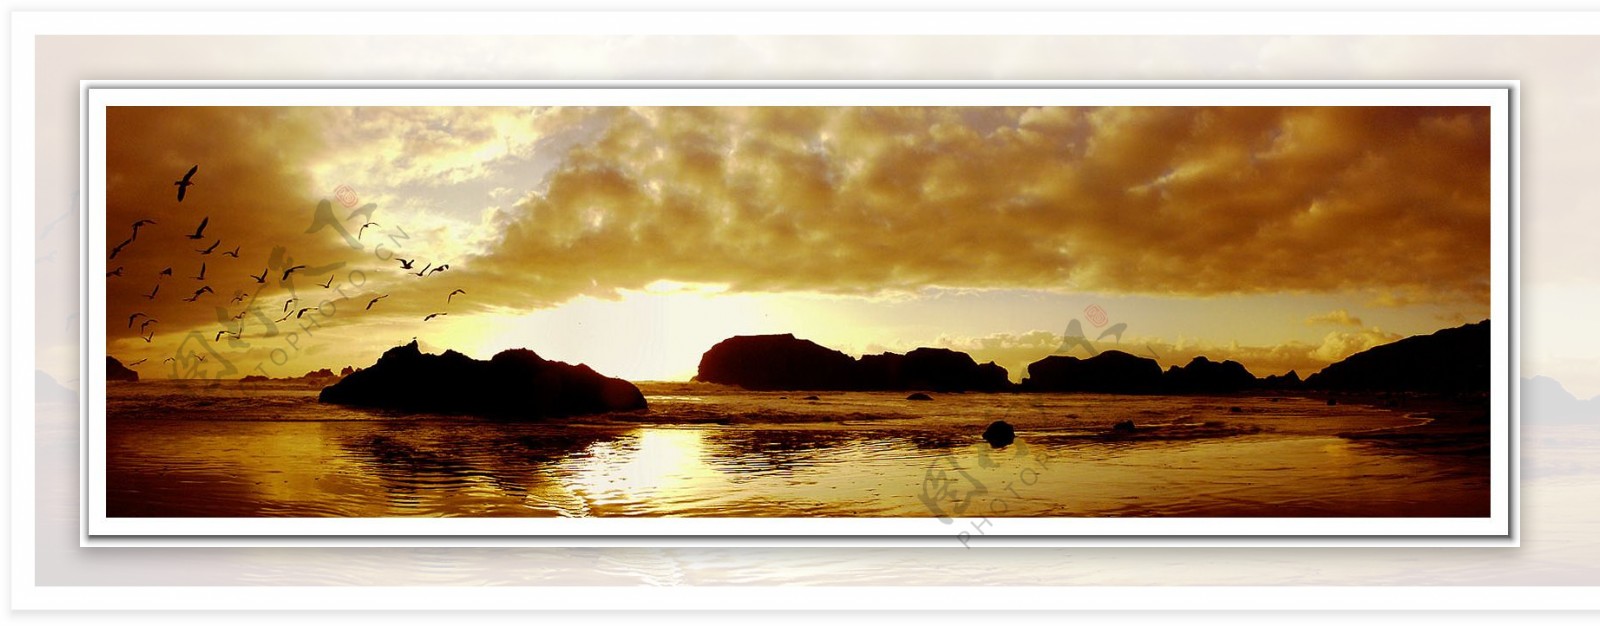 夕阳天边海面全景图3d设计贴图环境素材